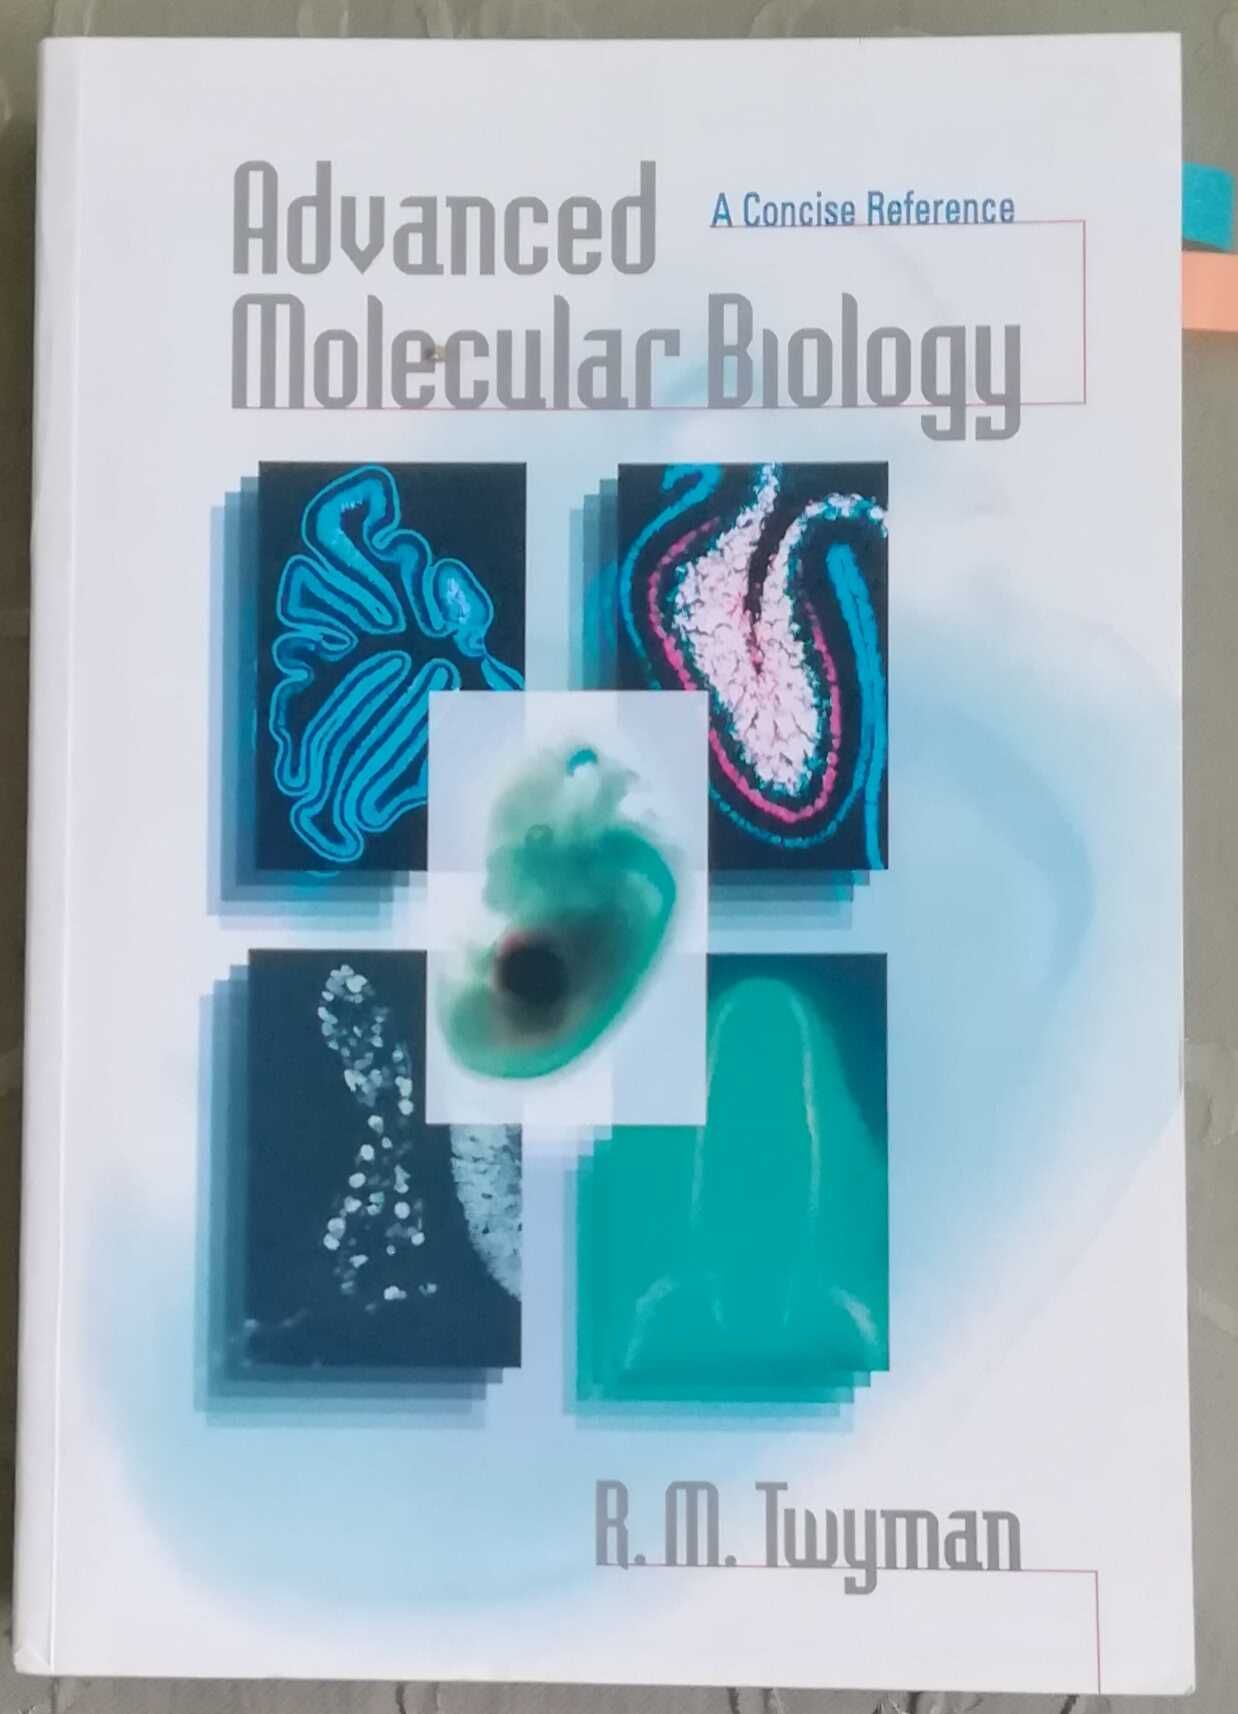 Podręcznik "Adwanced Molecular Biology, autor R.M. Twyman.